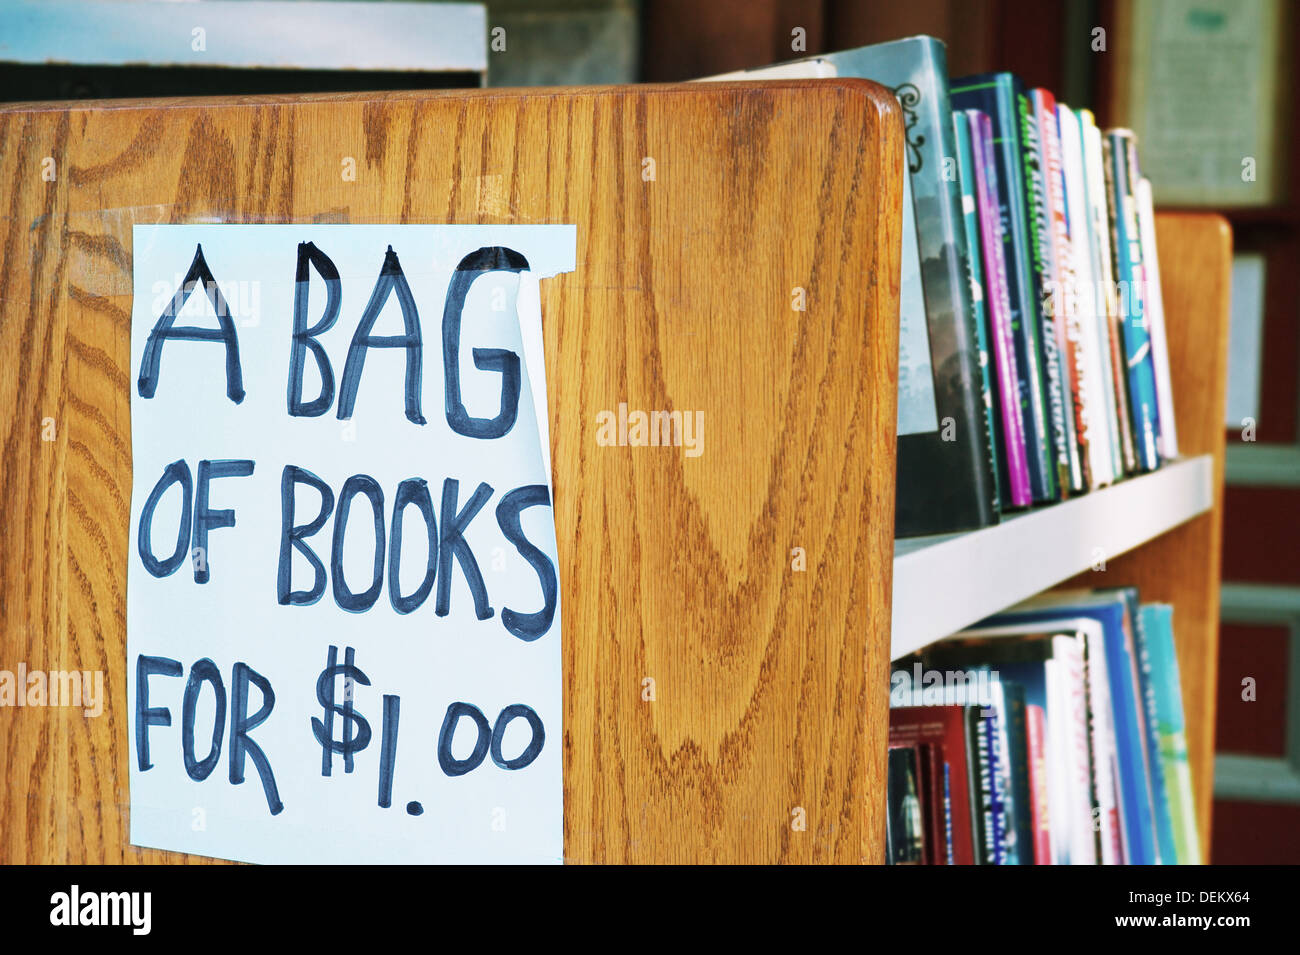 Un sacco di libri per $1.00 segno nella libreria Foto Stock